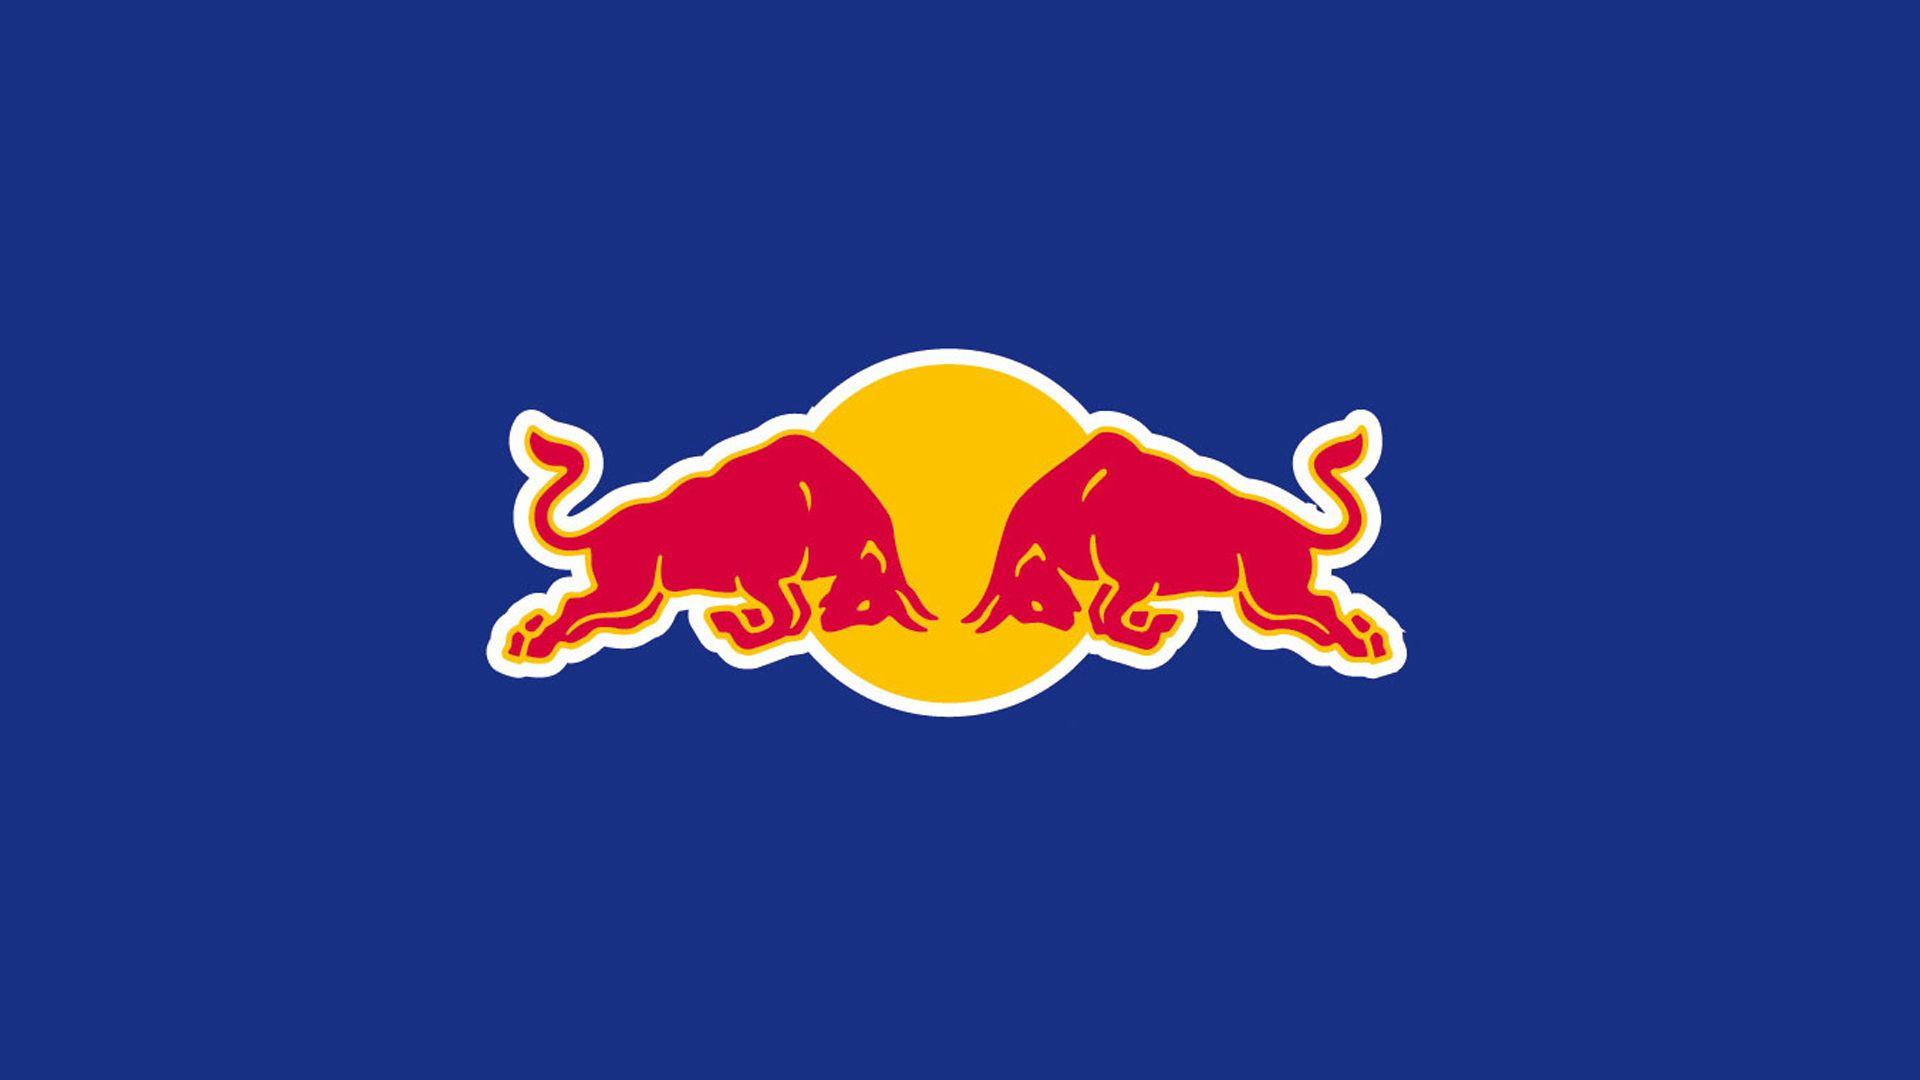 Red Bull Logo - Home Bull Advanced Technologies